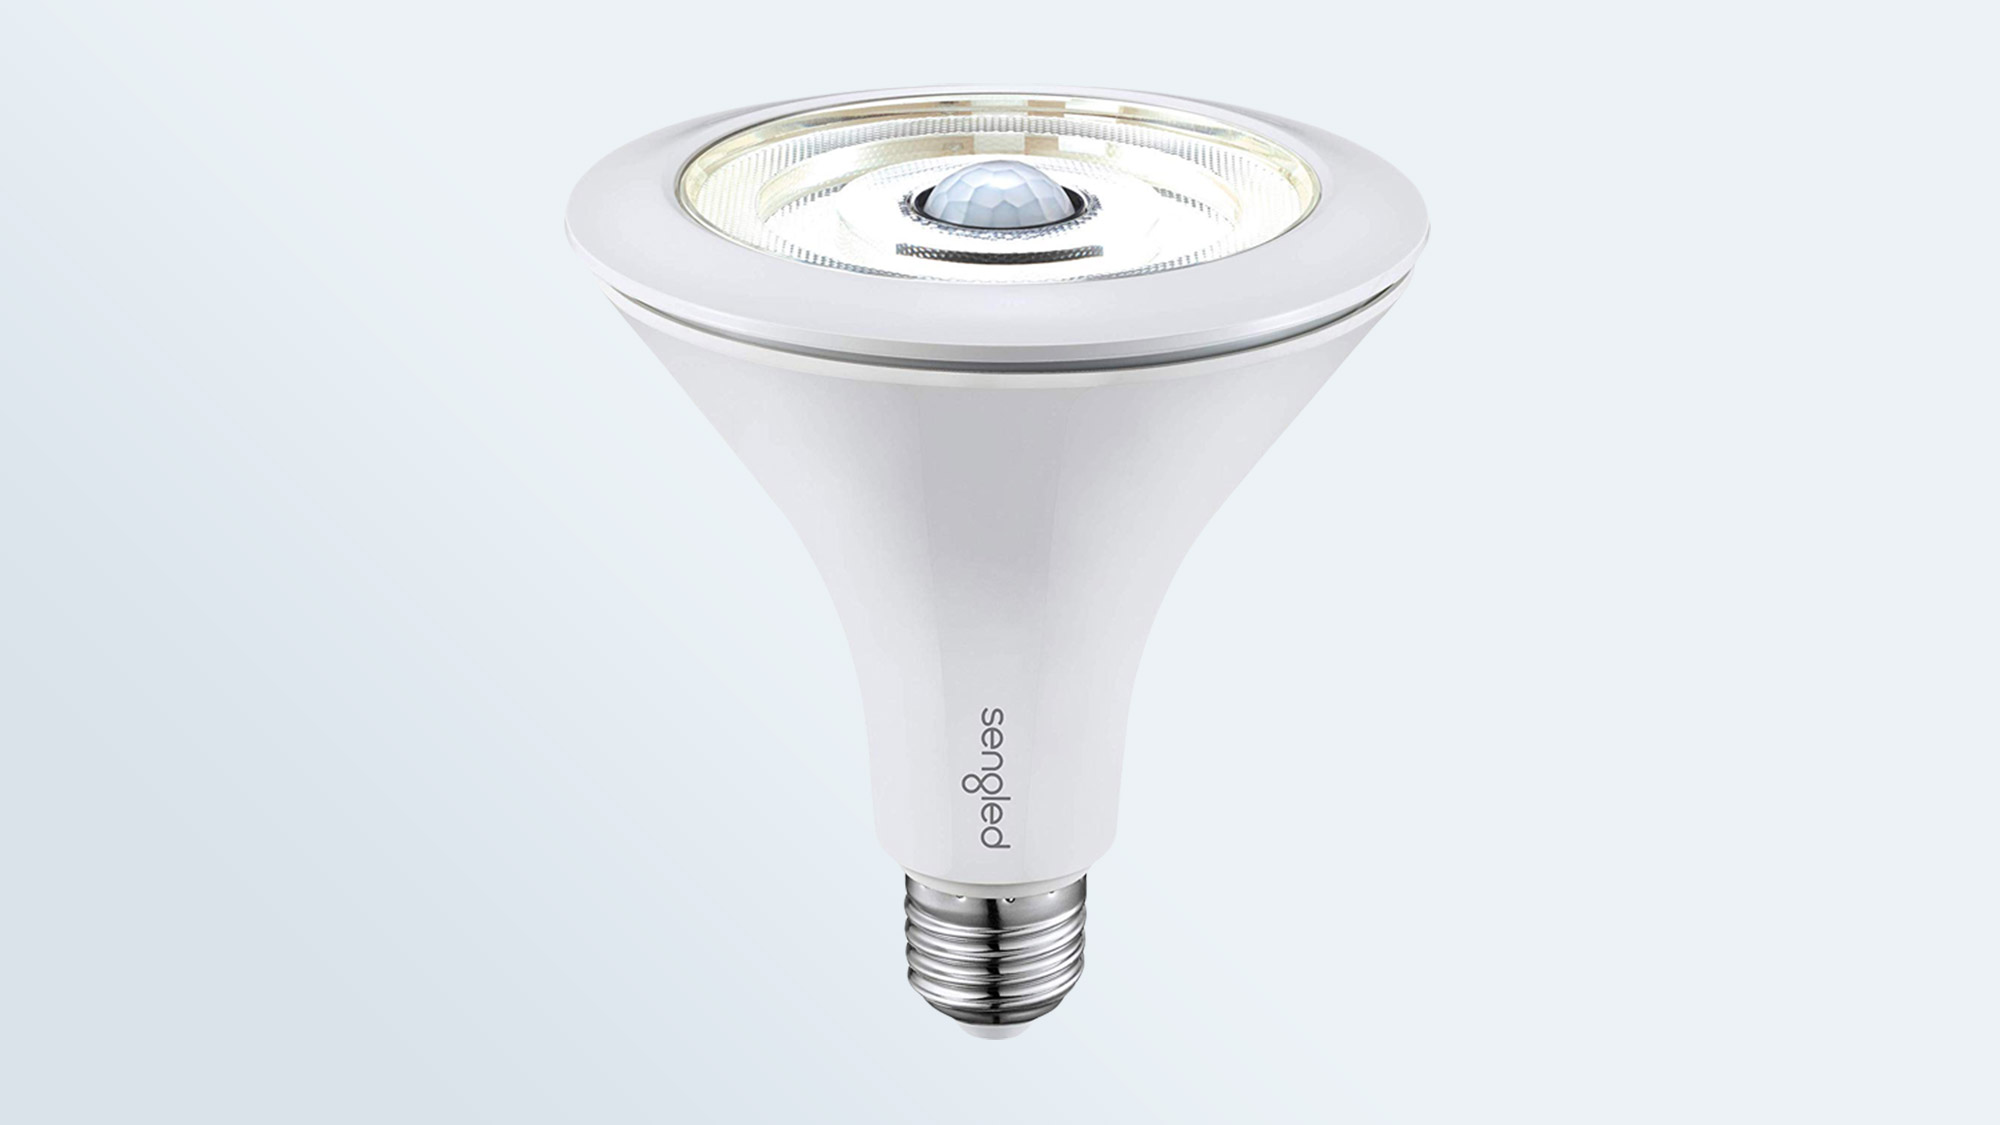 Best smart light bulbs: Sengled Smart LED with Motion Sensor